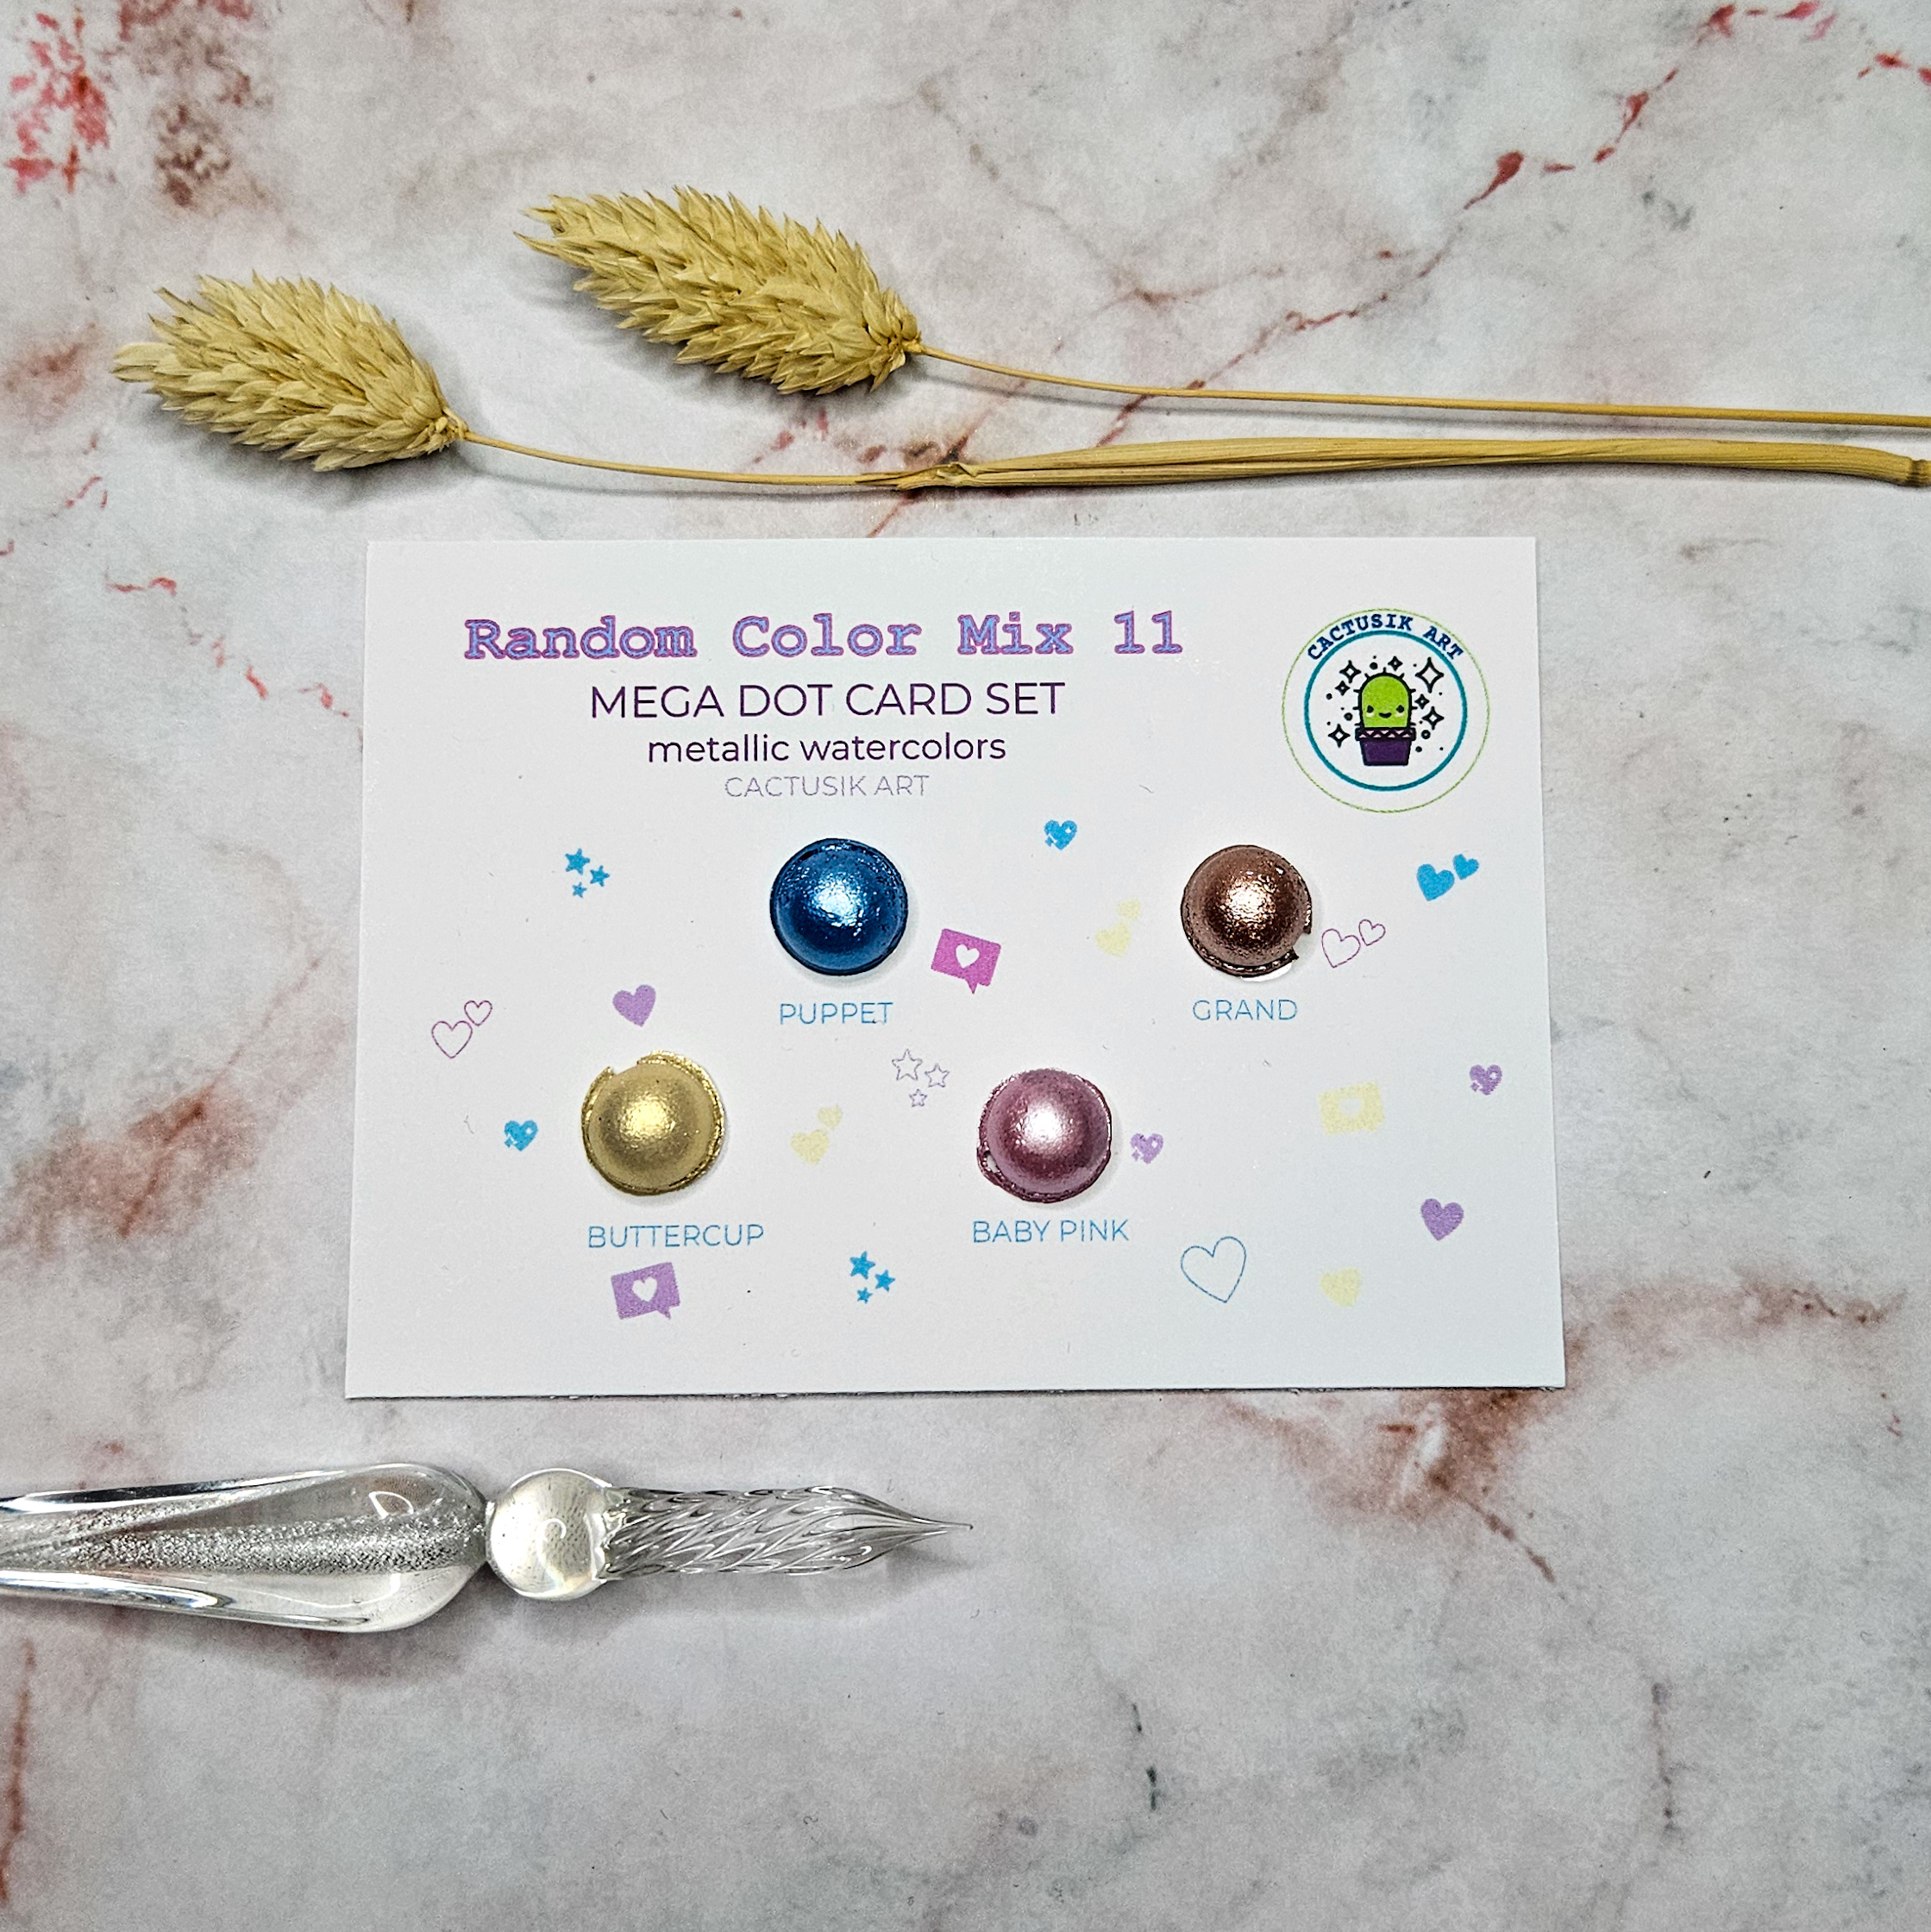 Random Color Mix 11 – Mega Dot Card Set